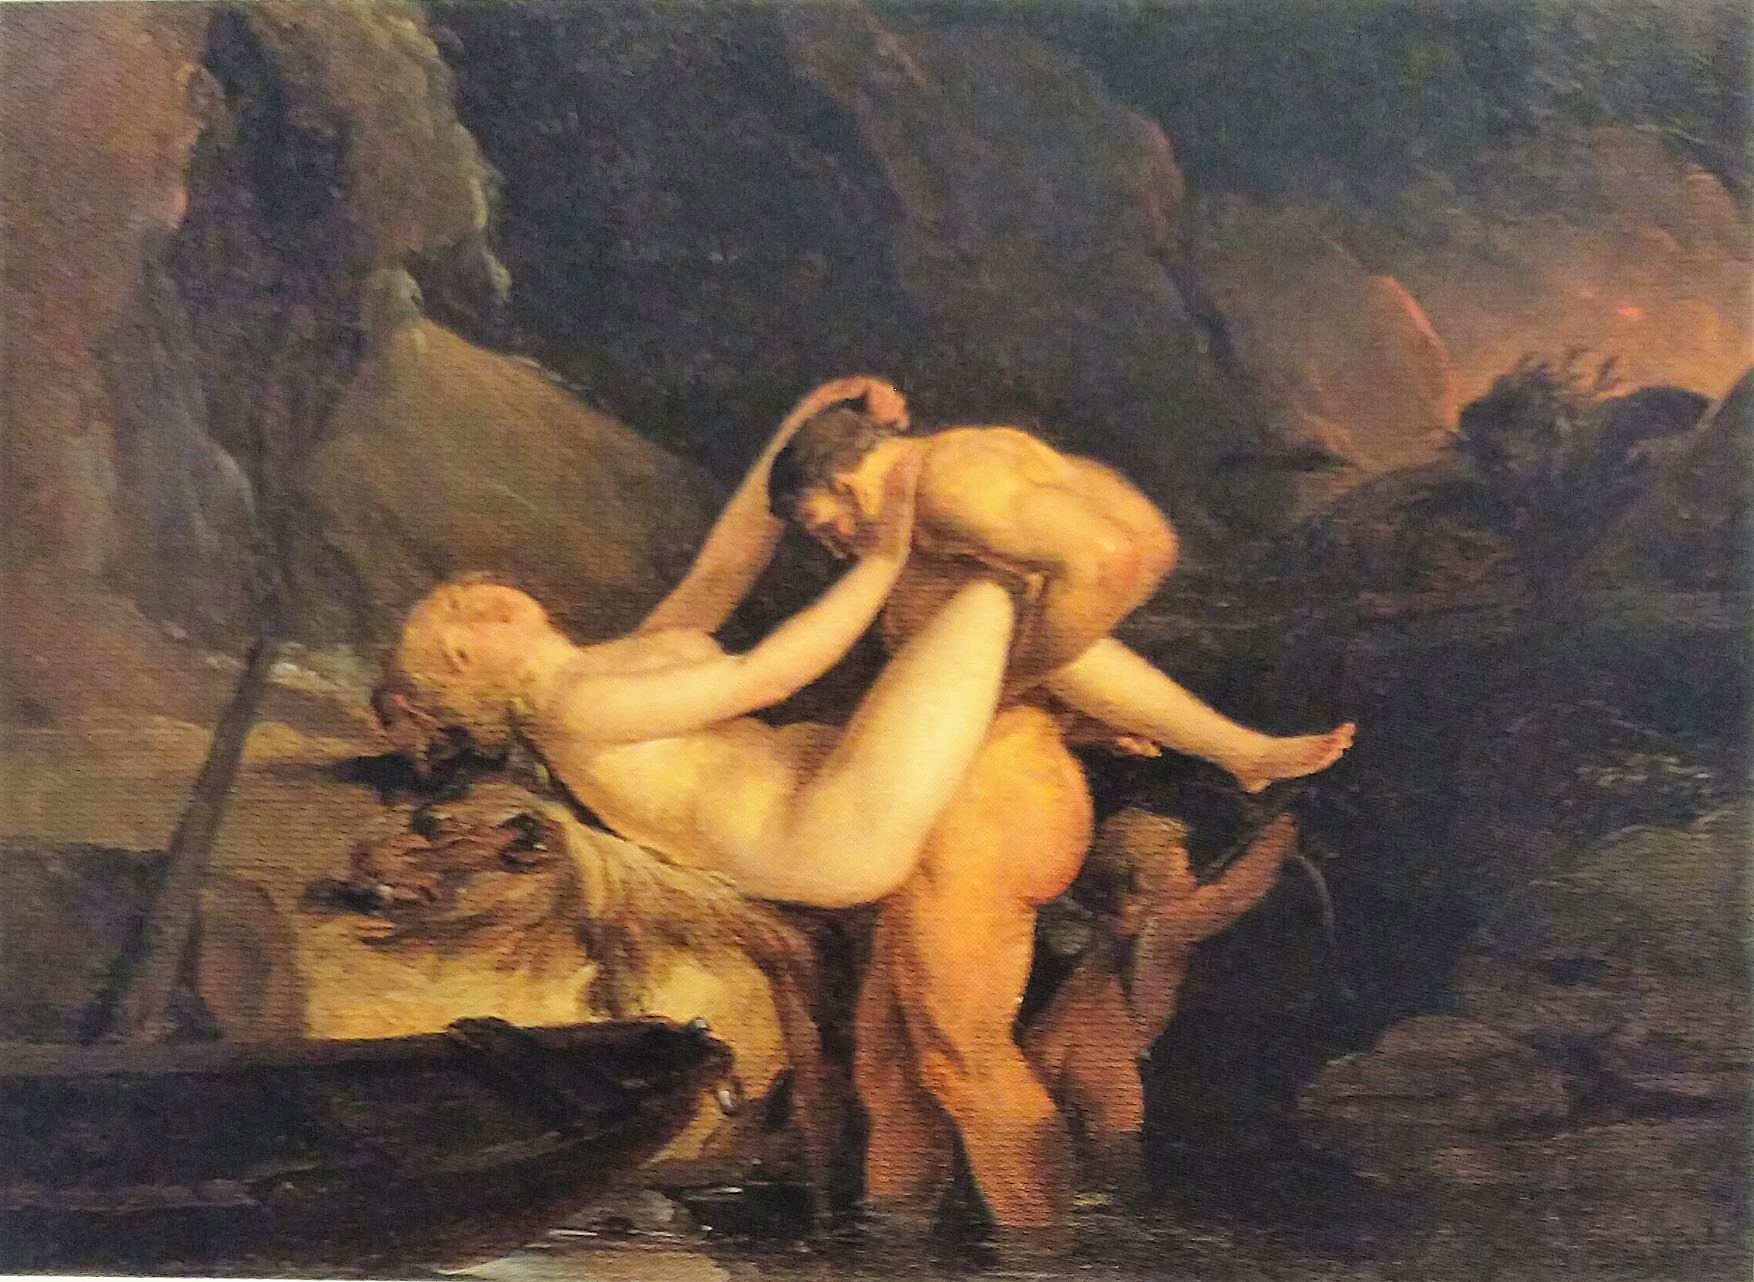 Boilly 1795-96 Hercule et Alceste